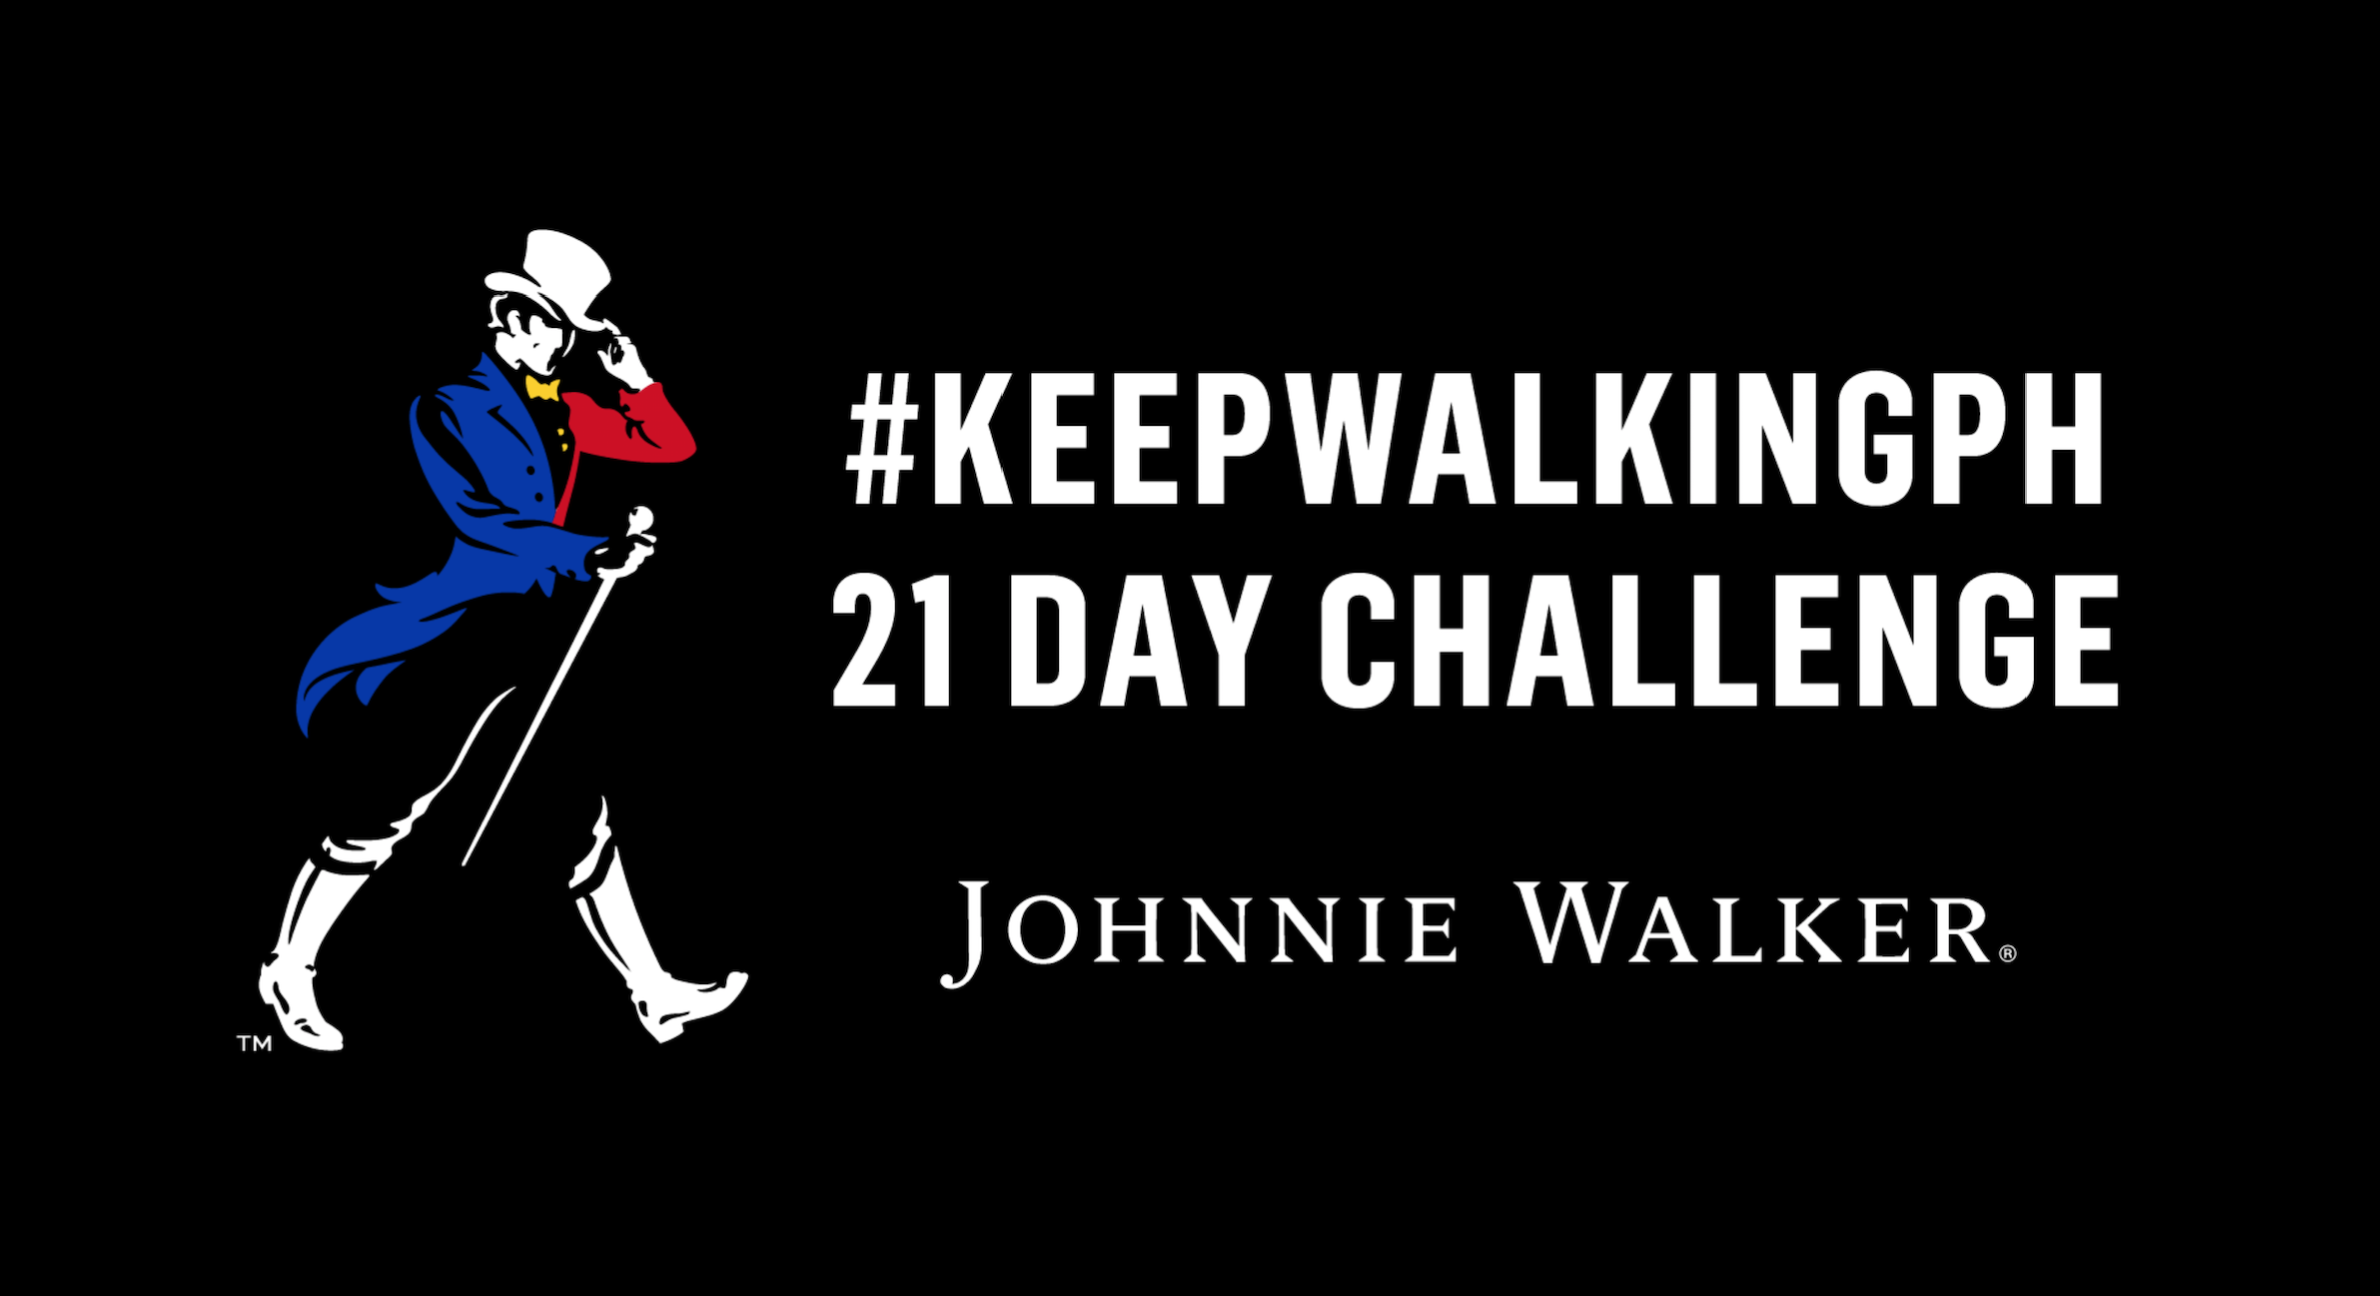 Keep Walking: Johnnie Walker’s 21 day challenge